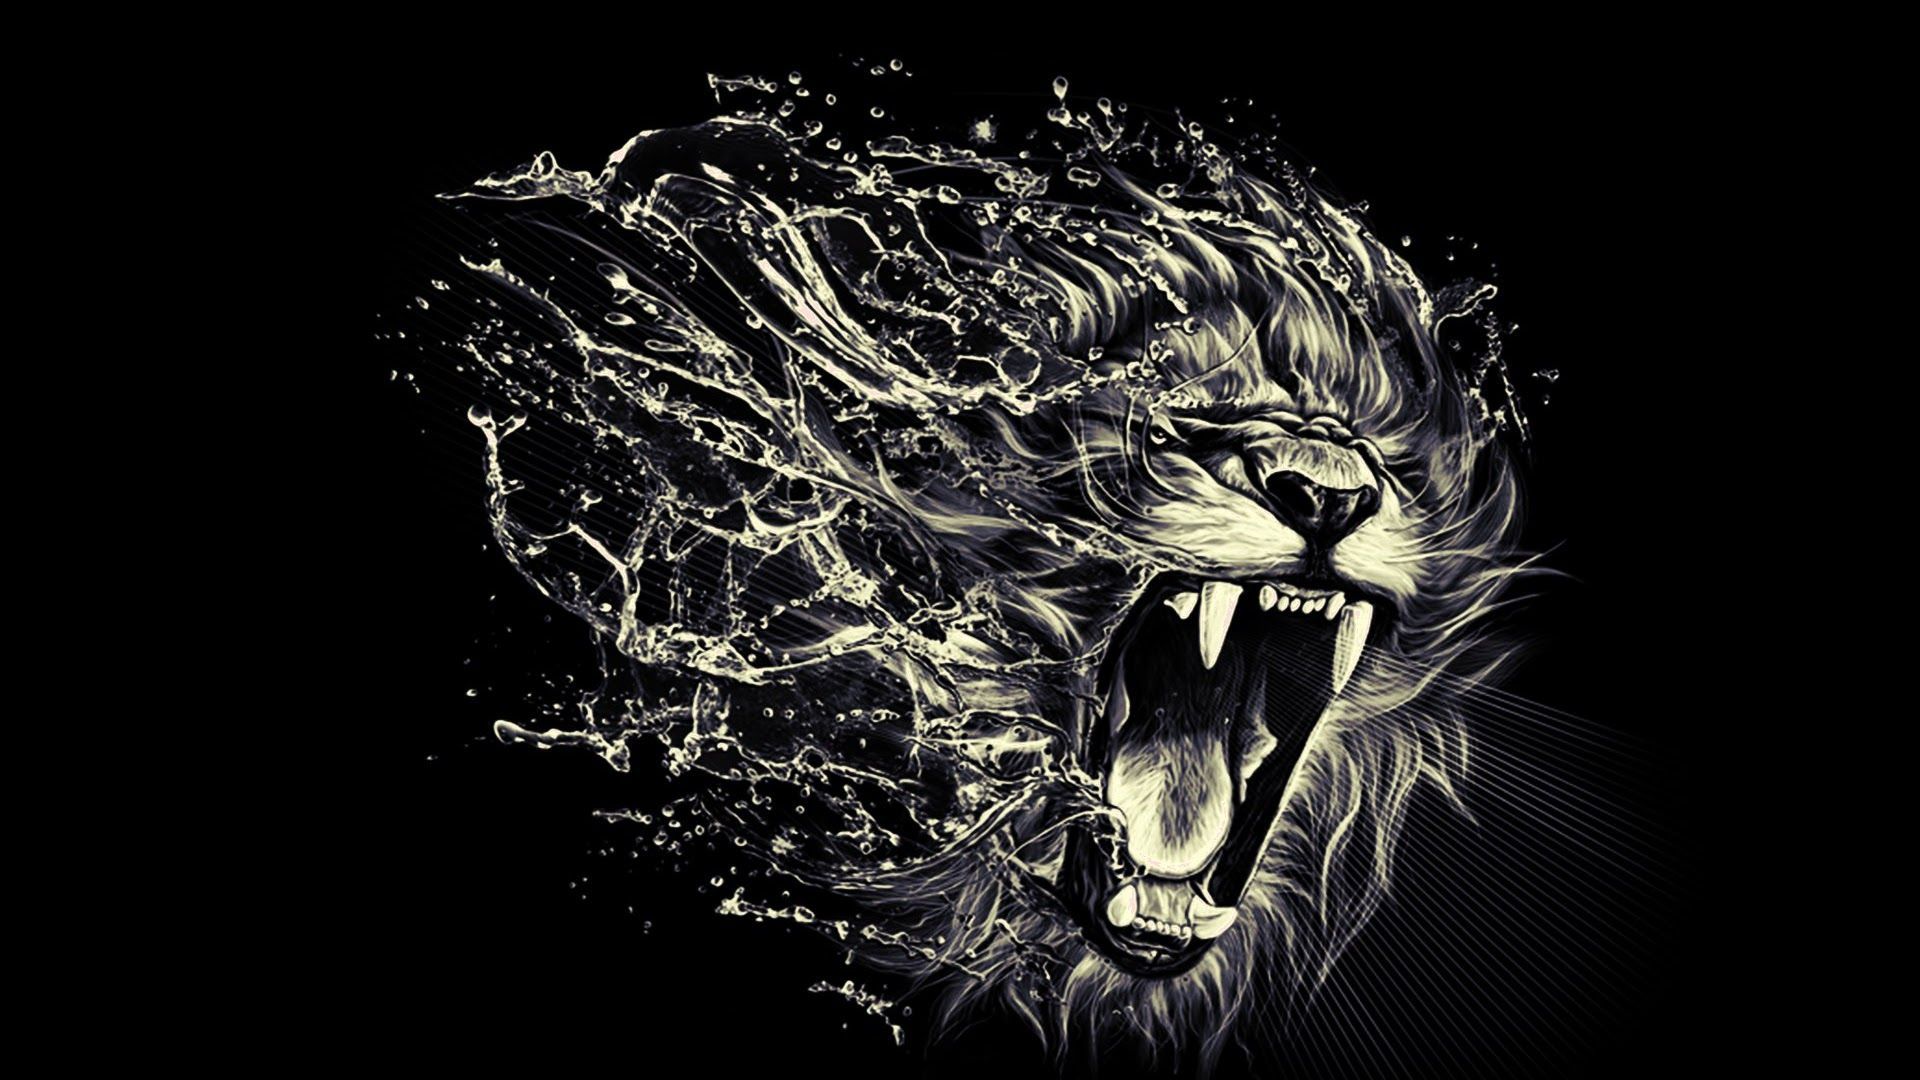 Lion Wallpaper Widescreen. Lion tattoo, Lion wallpaper, Lion art